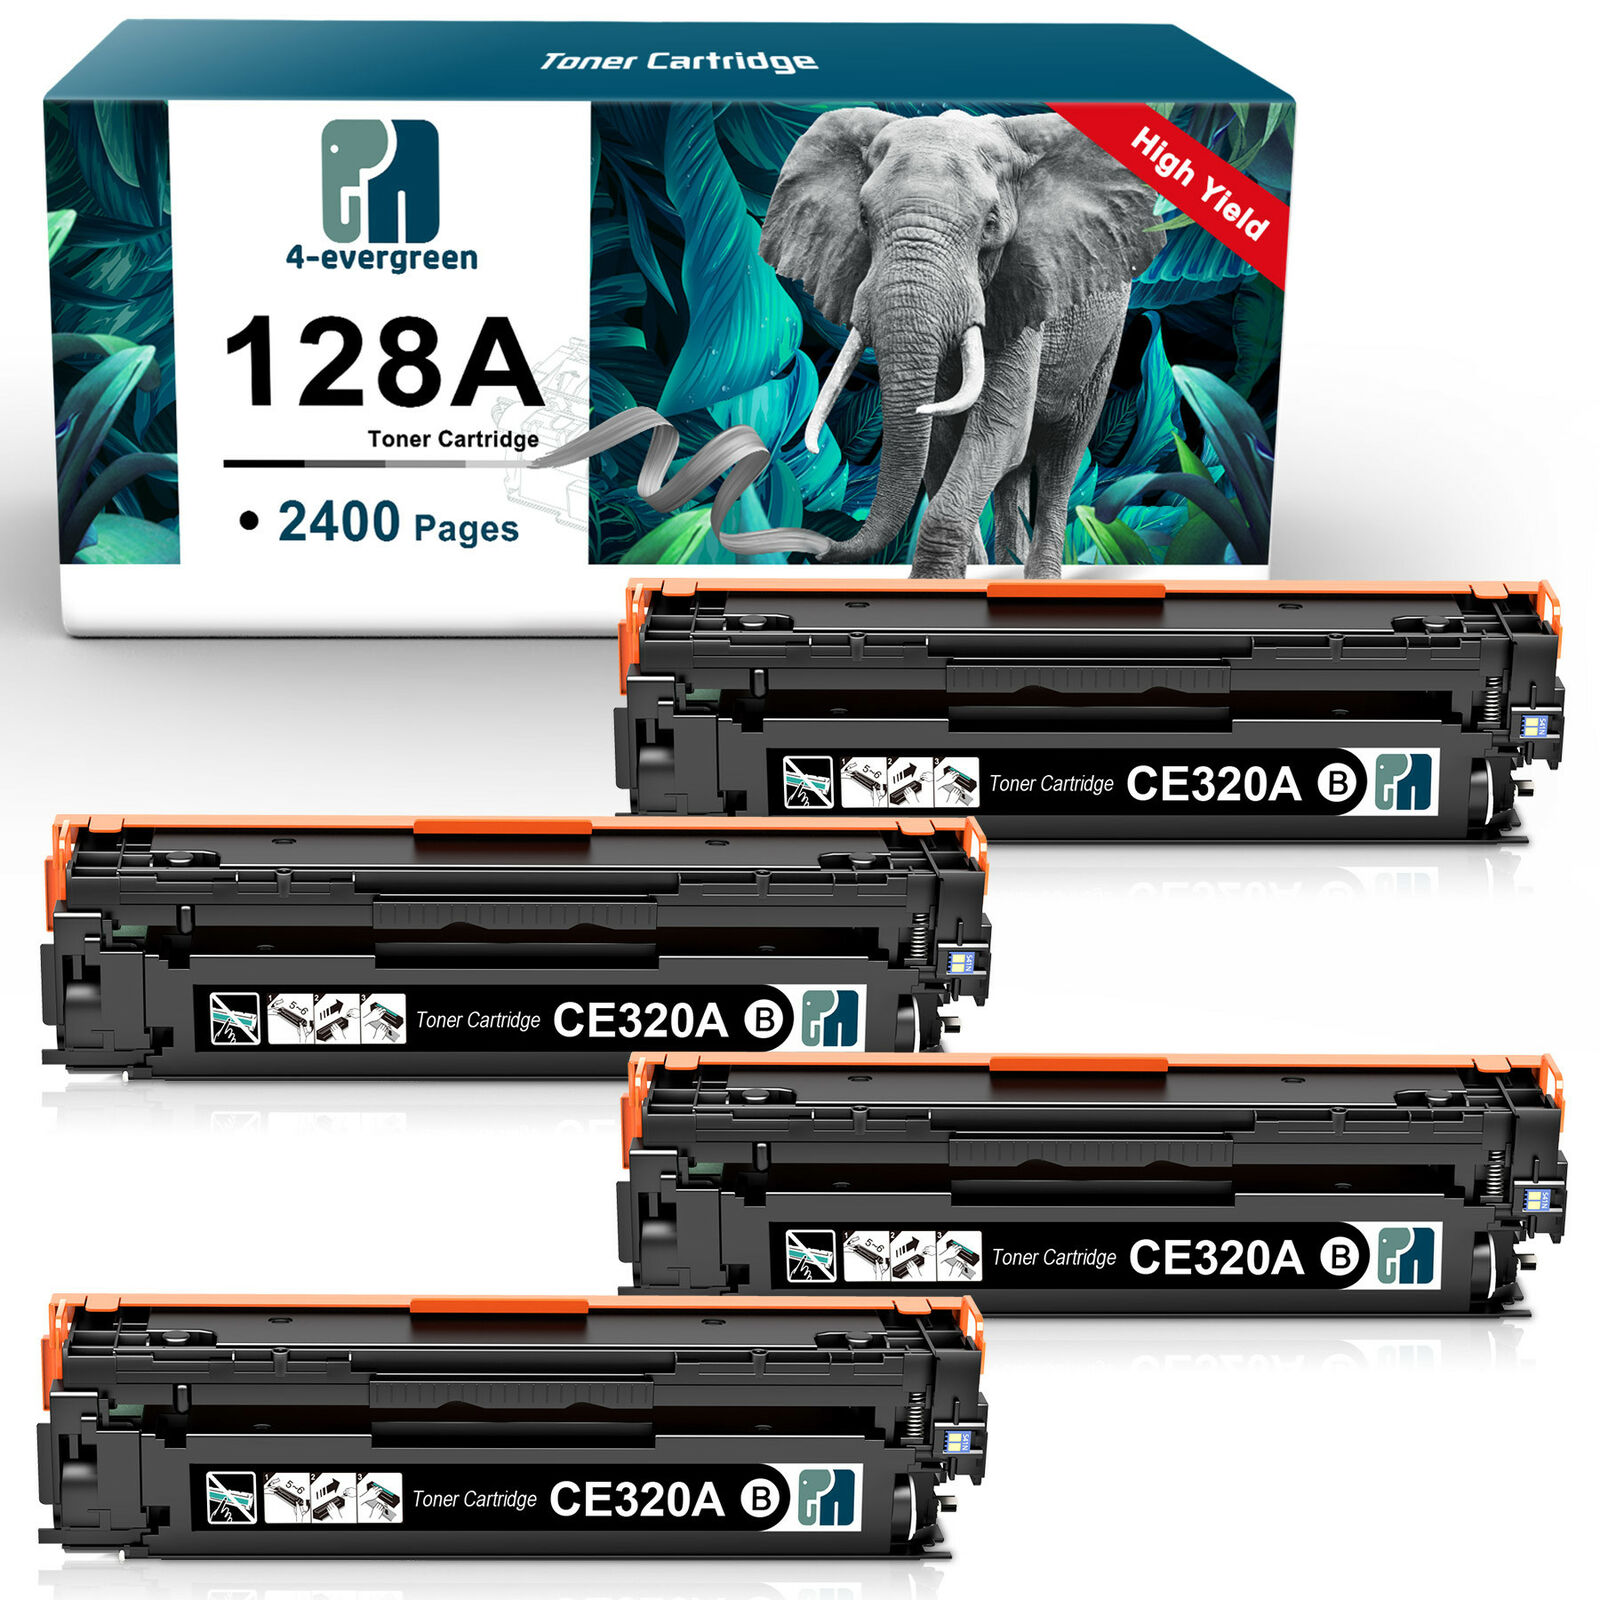 4x CE320A Black Toner Cartridges for HP 128A Color Laserjet Pro CM1415fnw CP1525